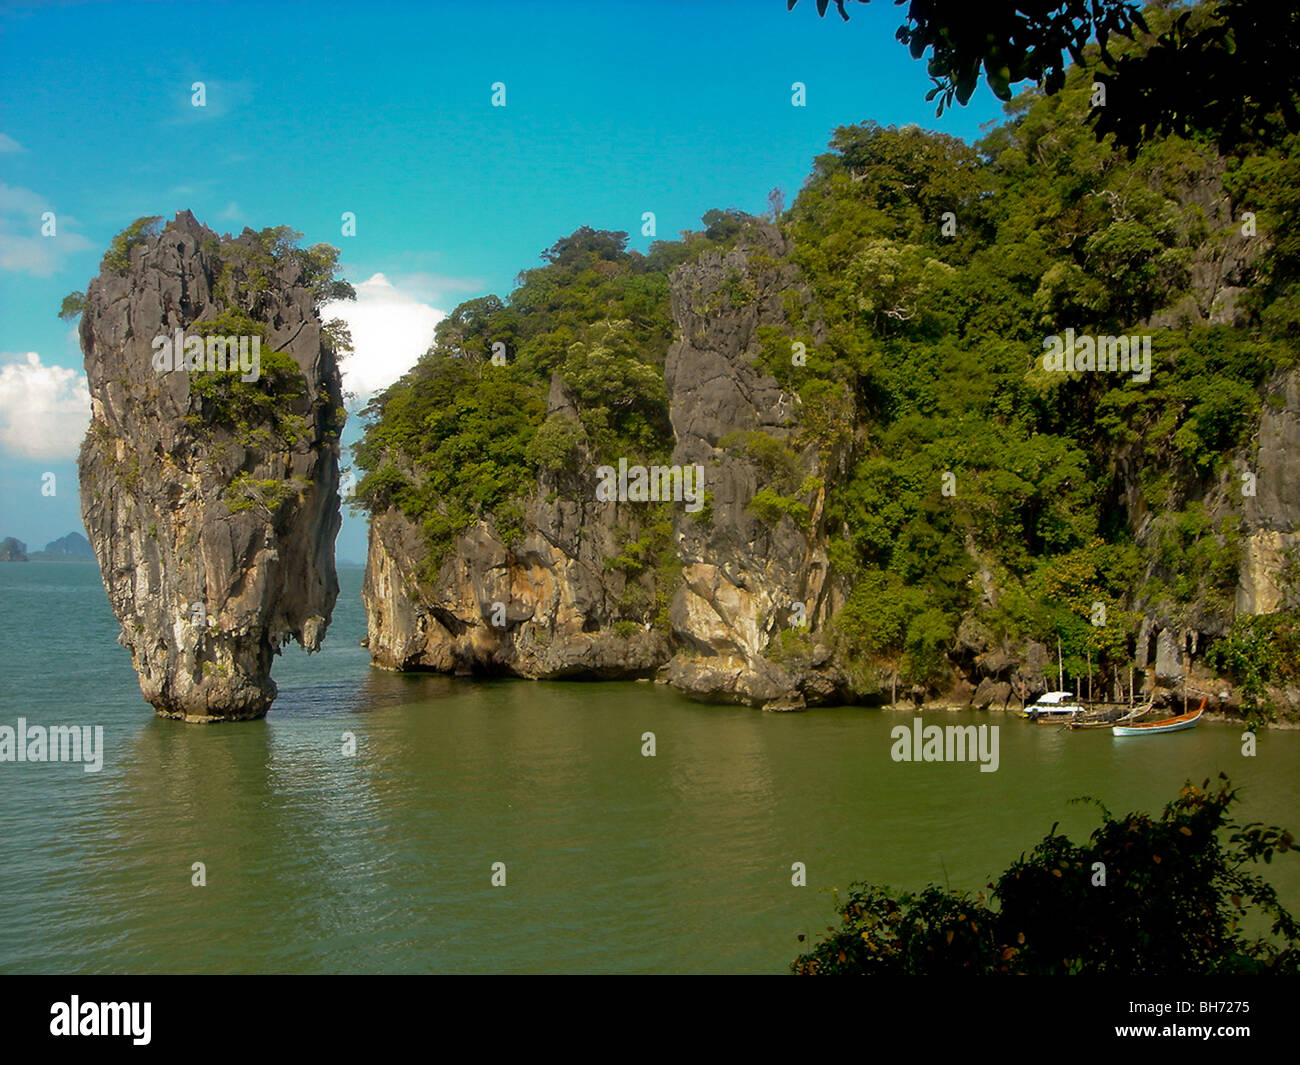 La isla de James Bond, Khao Phing Kan Island, Tailandia Foto de stock